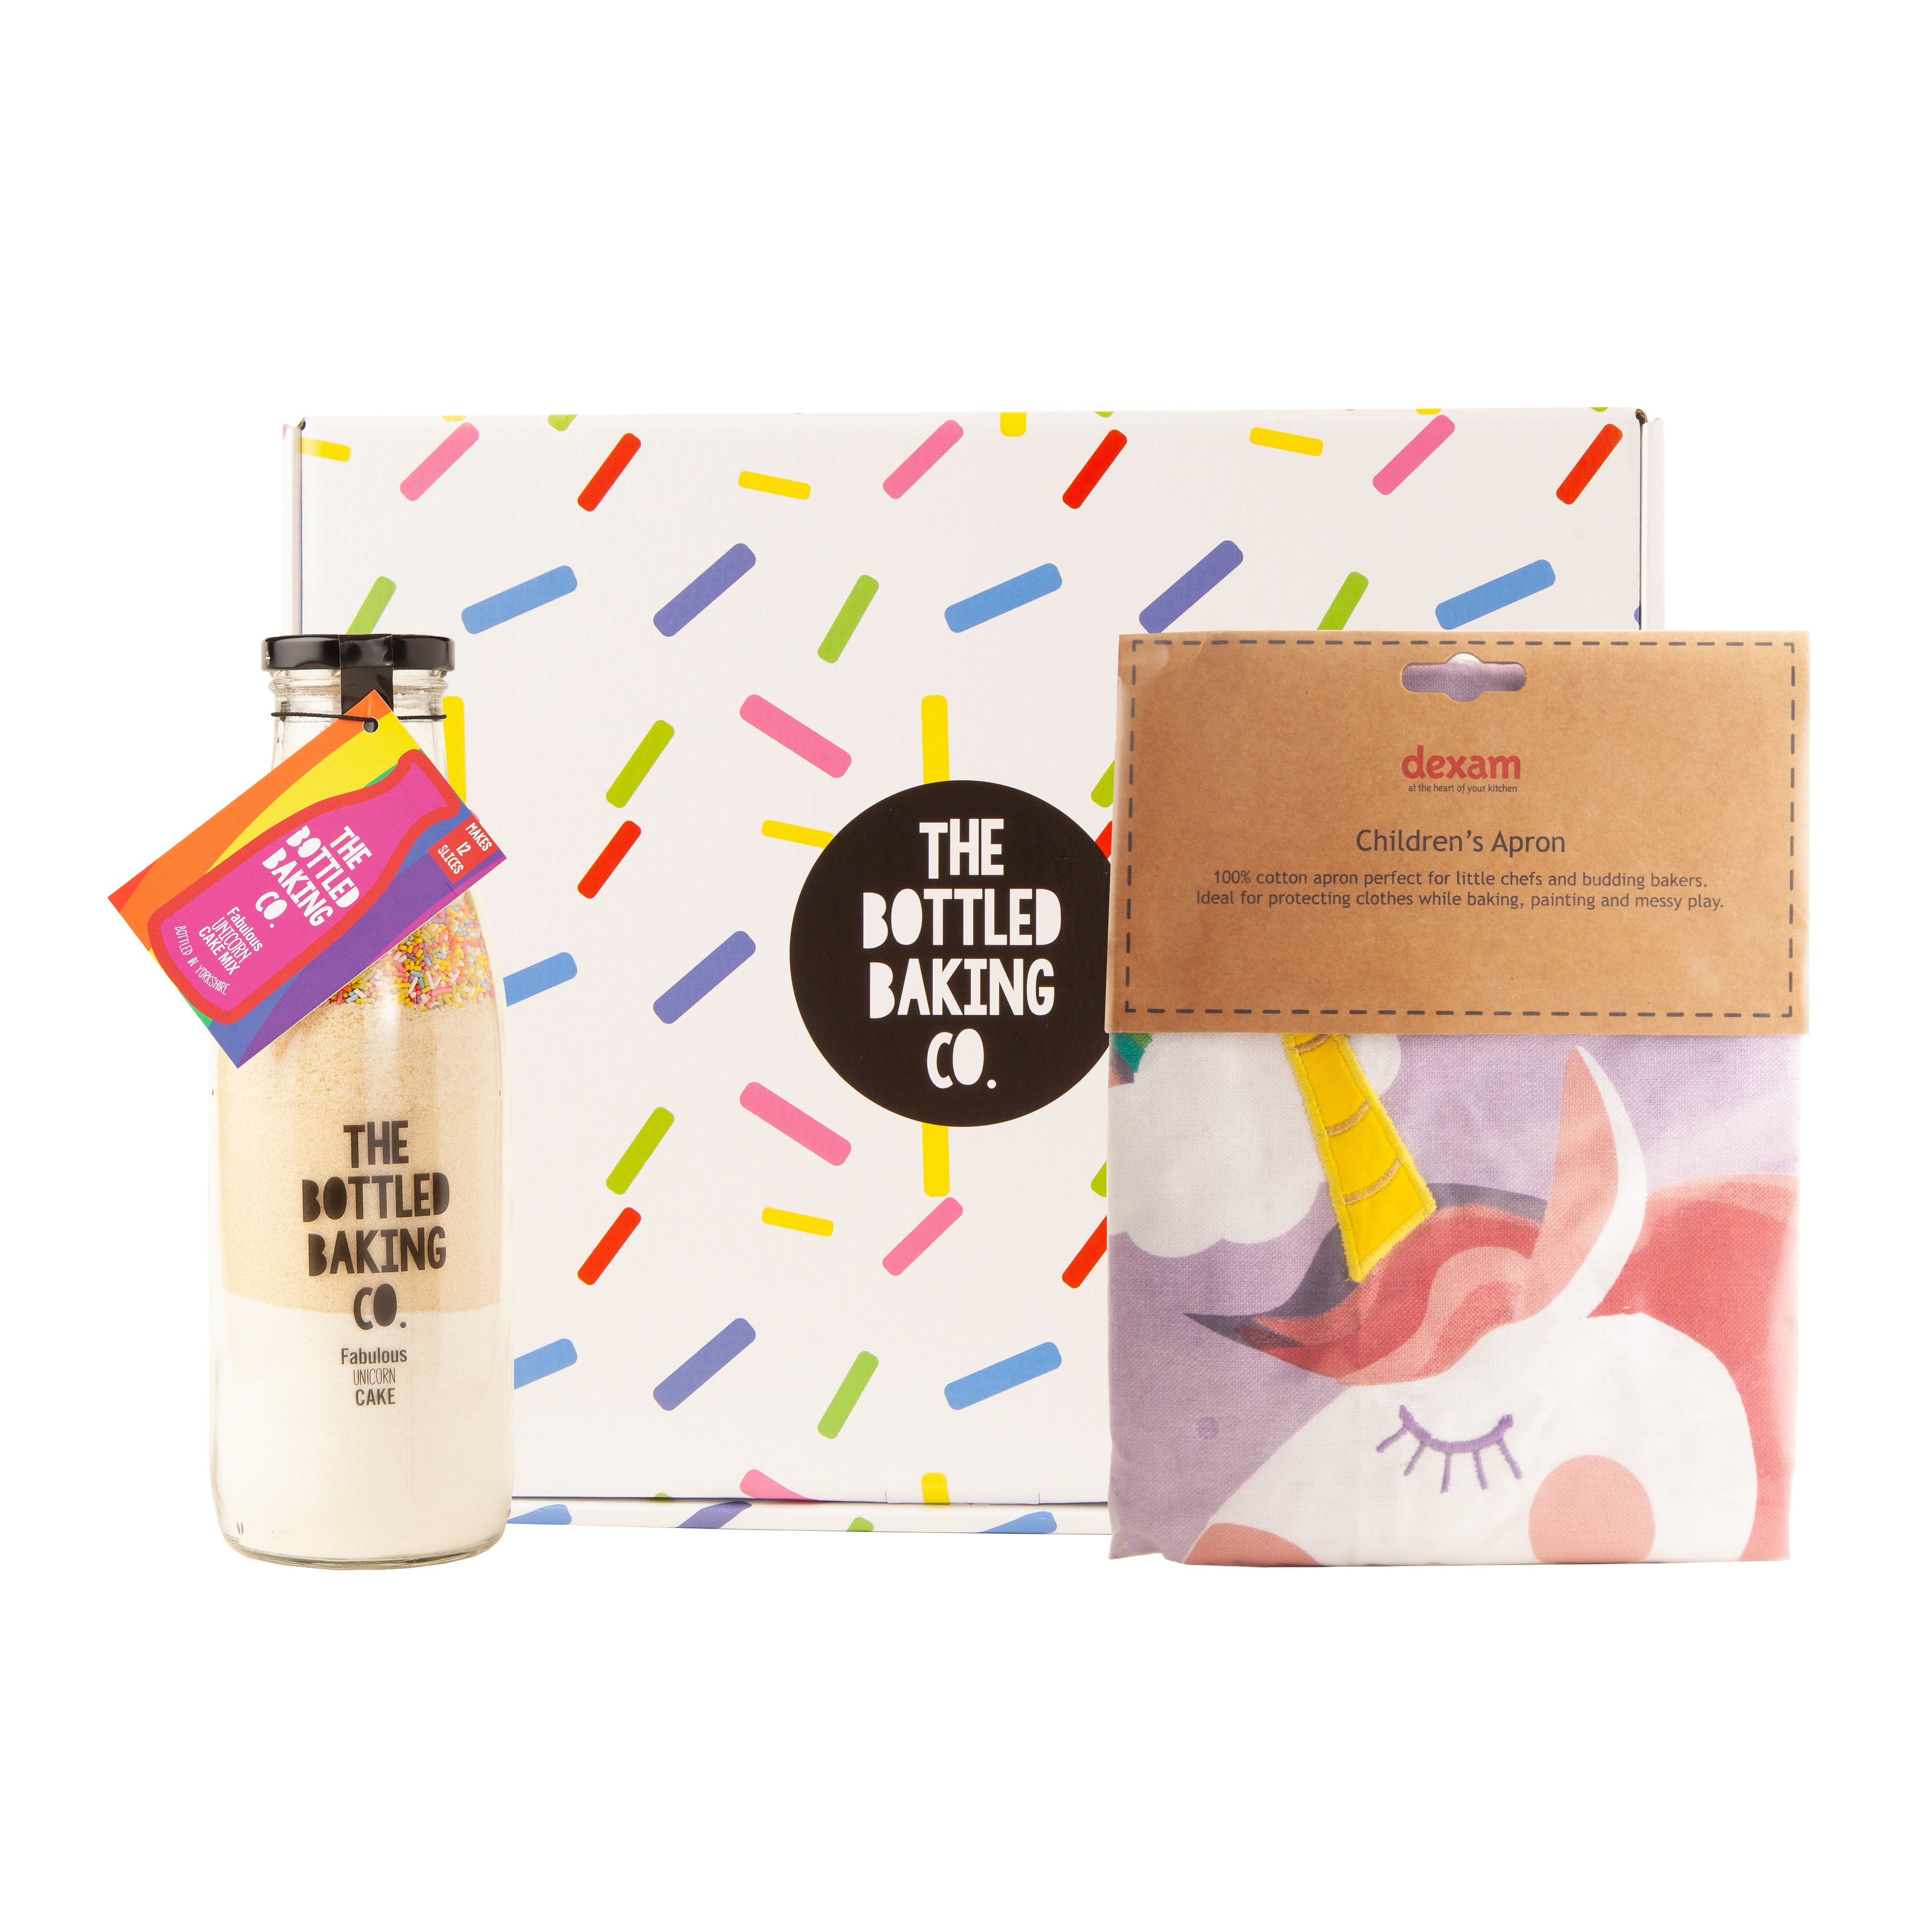 Fabulous Unicorn Cake Mix & Unicorn Apron Gift Box - Bottled Baking Co